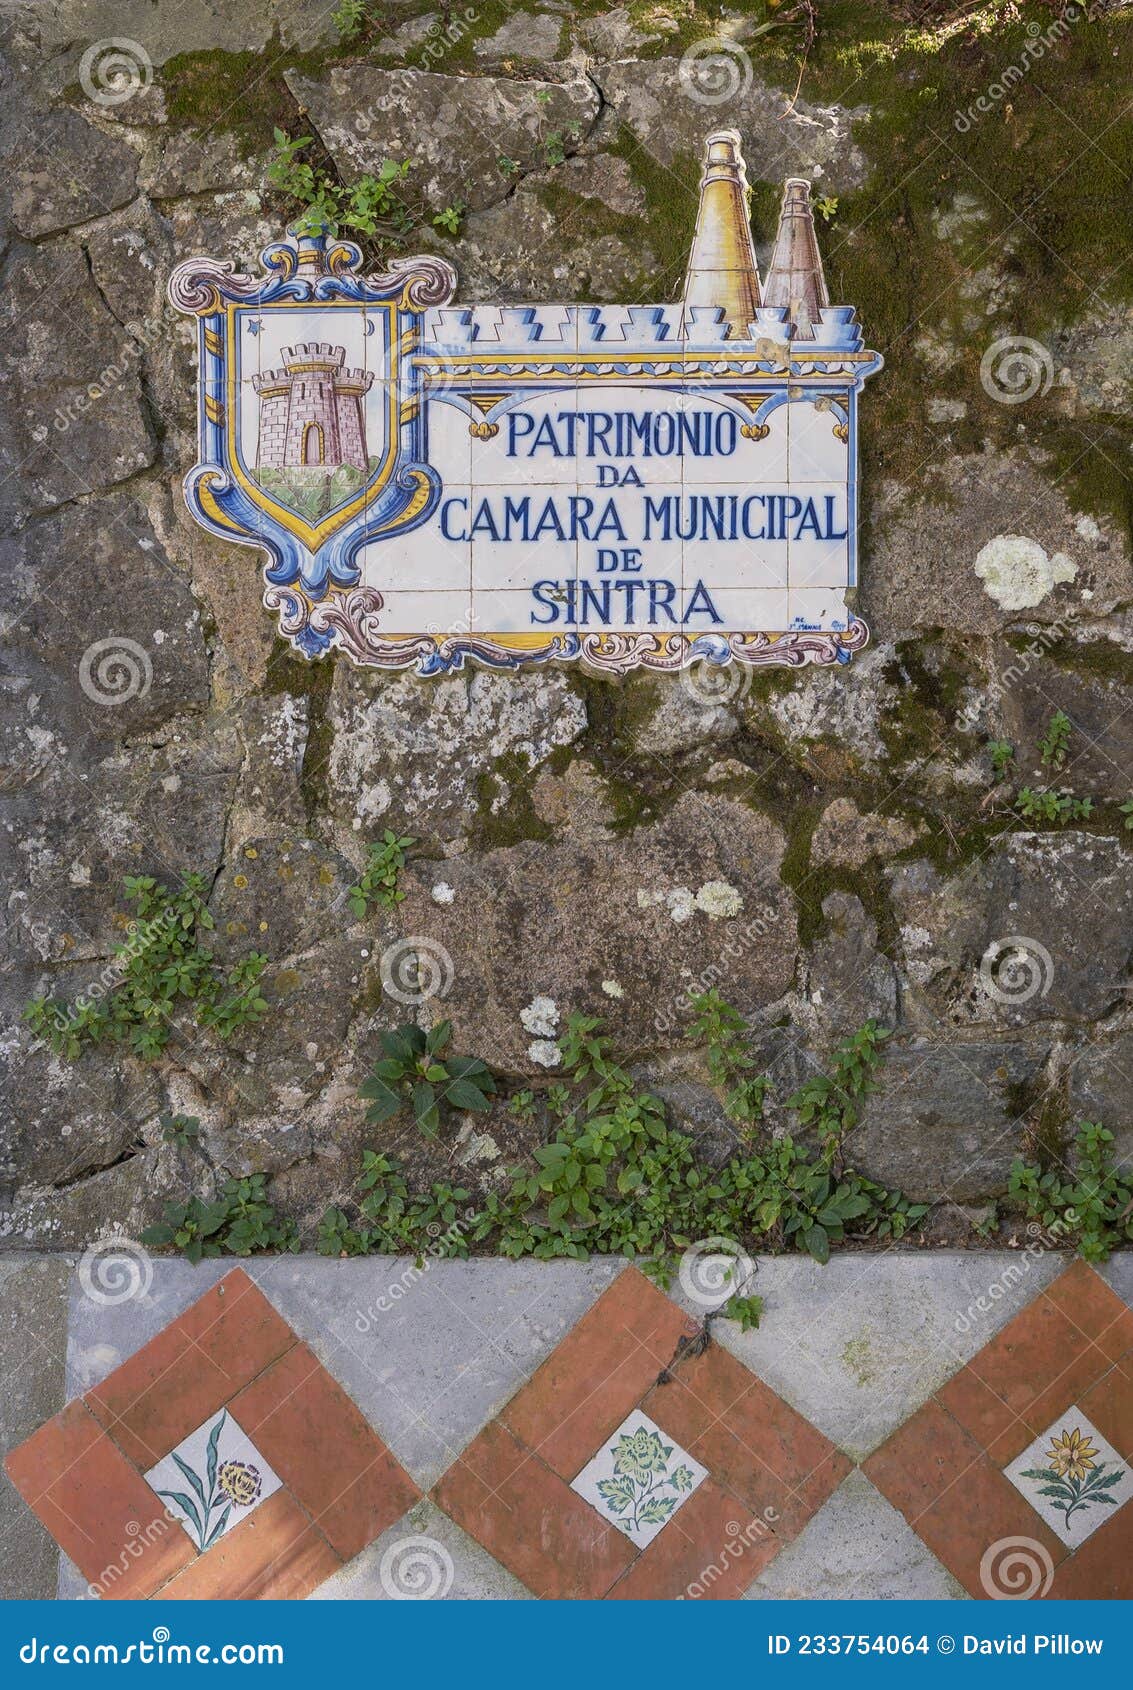 tiles painted with `patrimonio da camara municipal de sintra` seen along volta mounted on a brick wall in sintra.